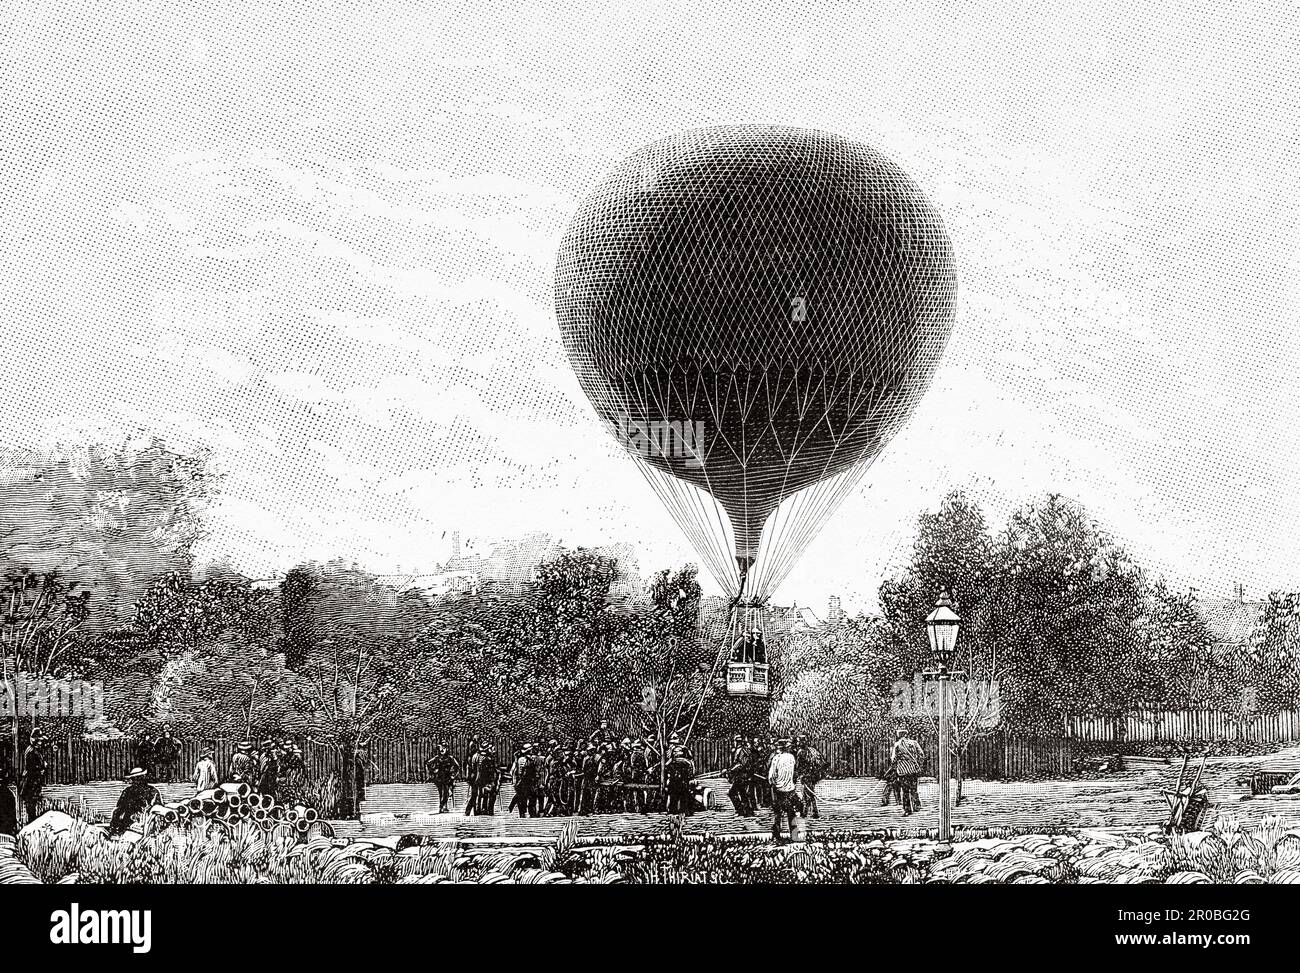 Les premières expériences de l'aérostation militaire de l'armée danoise, les ascensions captives du ballon North Star à Copenhague, au Danemark. Ancienne gravure du 19th siècle de la nature 1887 Banque D'Images